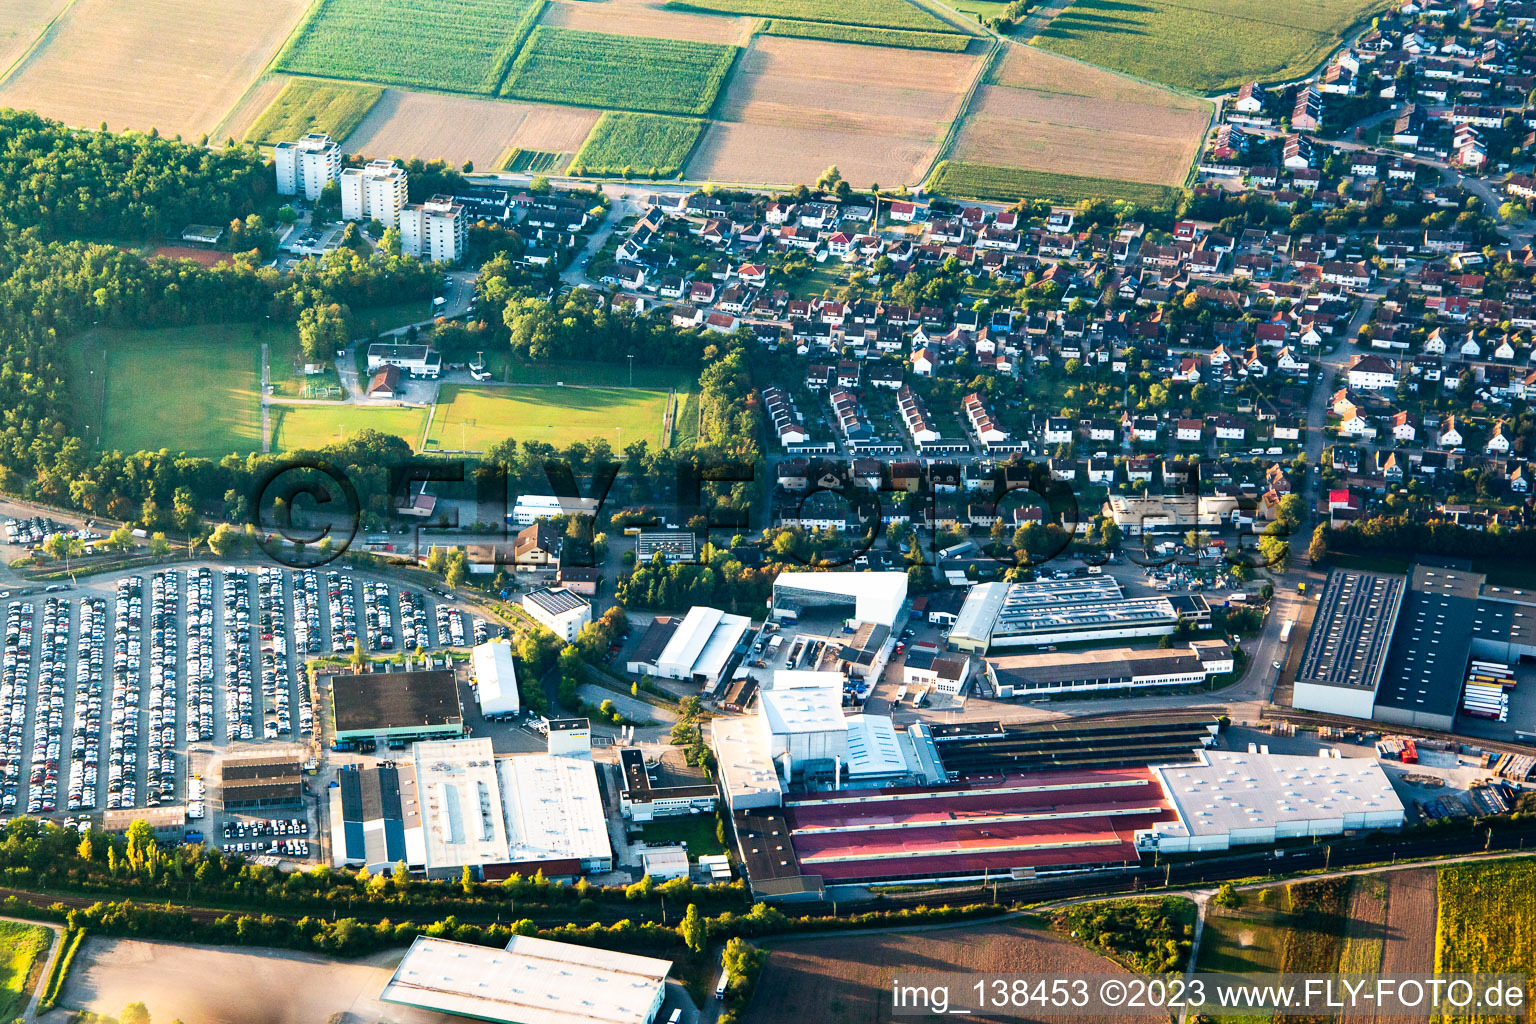 Vue aérienne de Alfred Kärcher SE & Co. KG et Südwestkarton GmbH & Co. KG à Illingen dans le département Bade-Wurtemberg, Allemagne